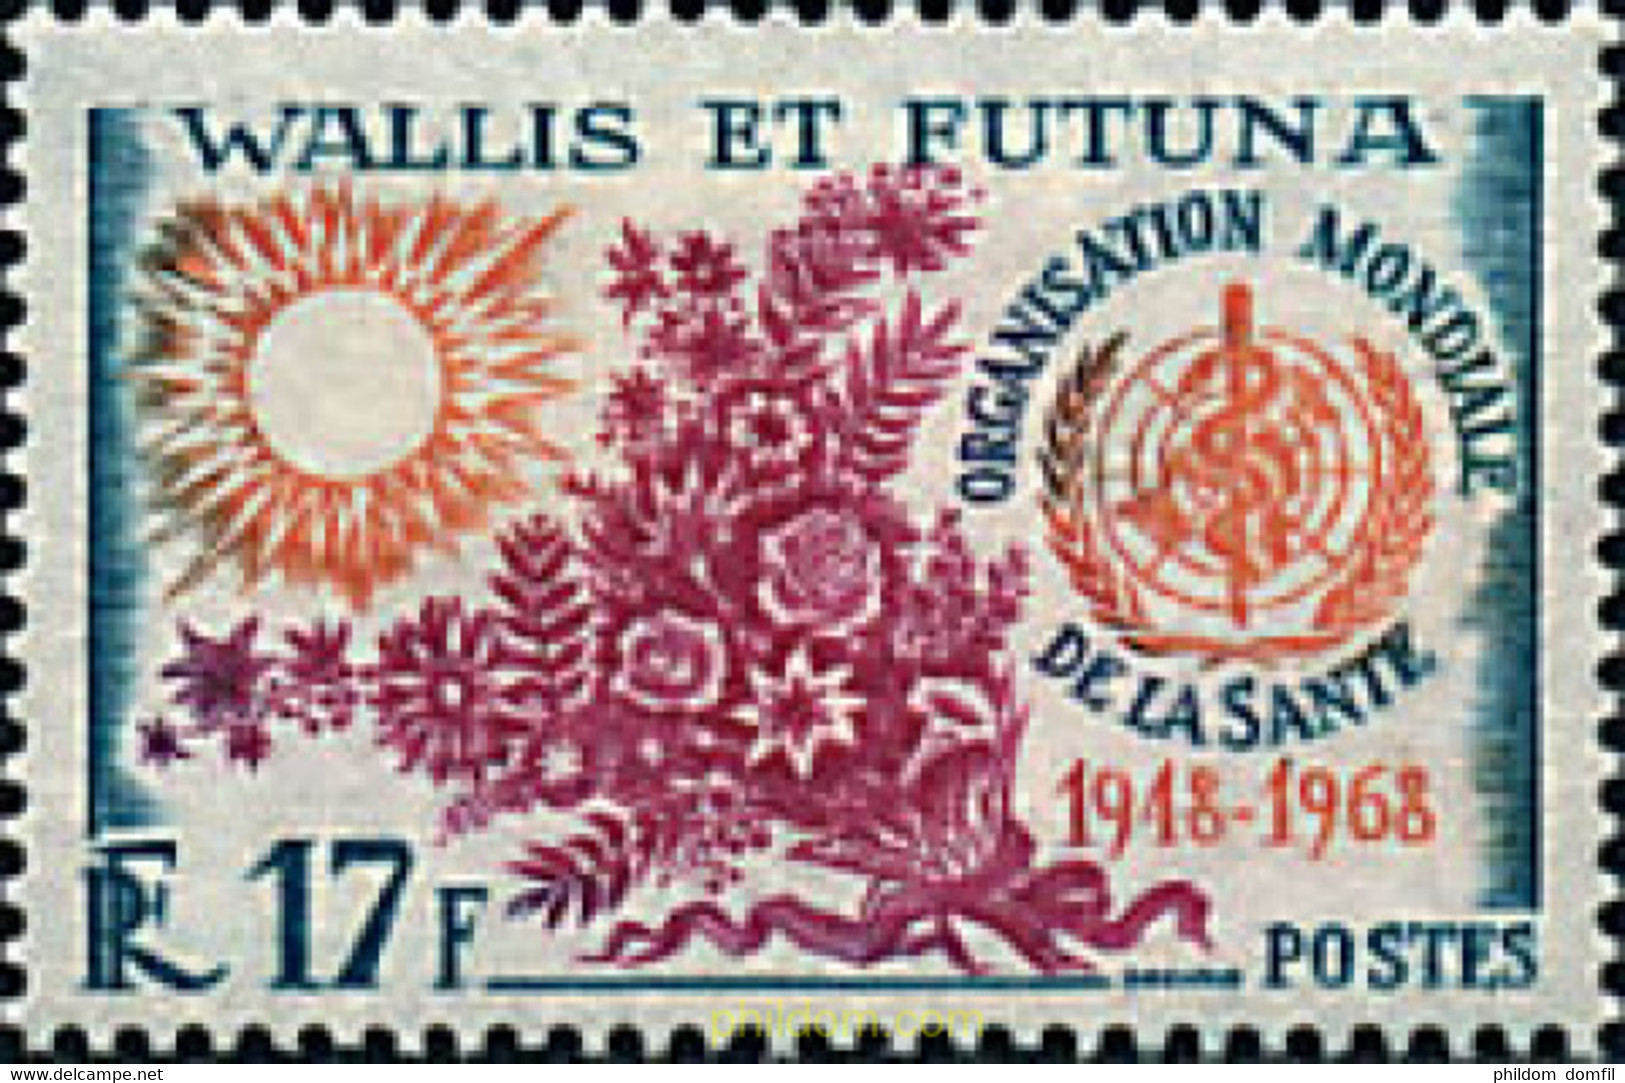 338538 HINGED WALLIS Y FUTUNA 1968 20 ANIVERSARIO DE LA OMS - Used Stamps